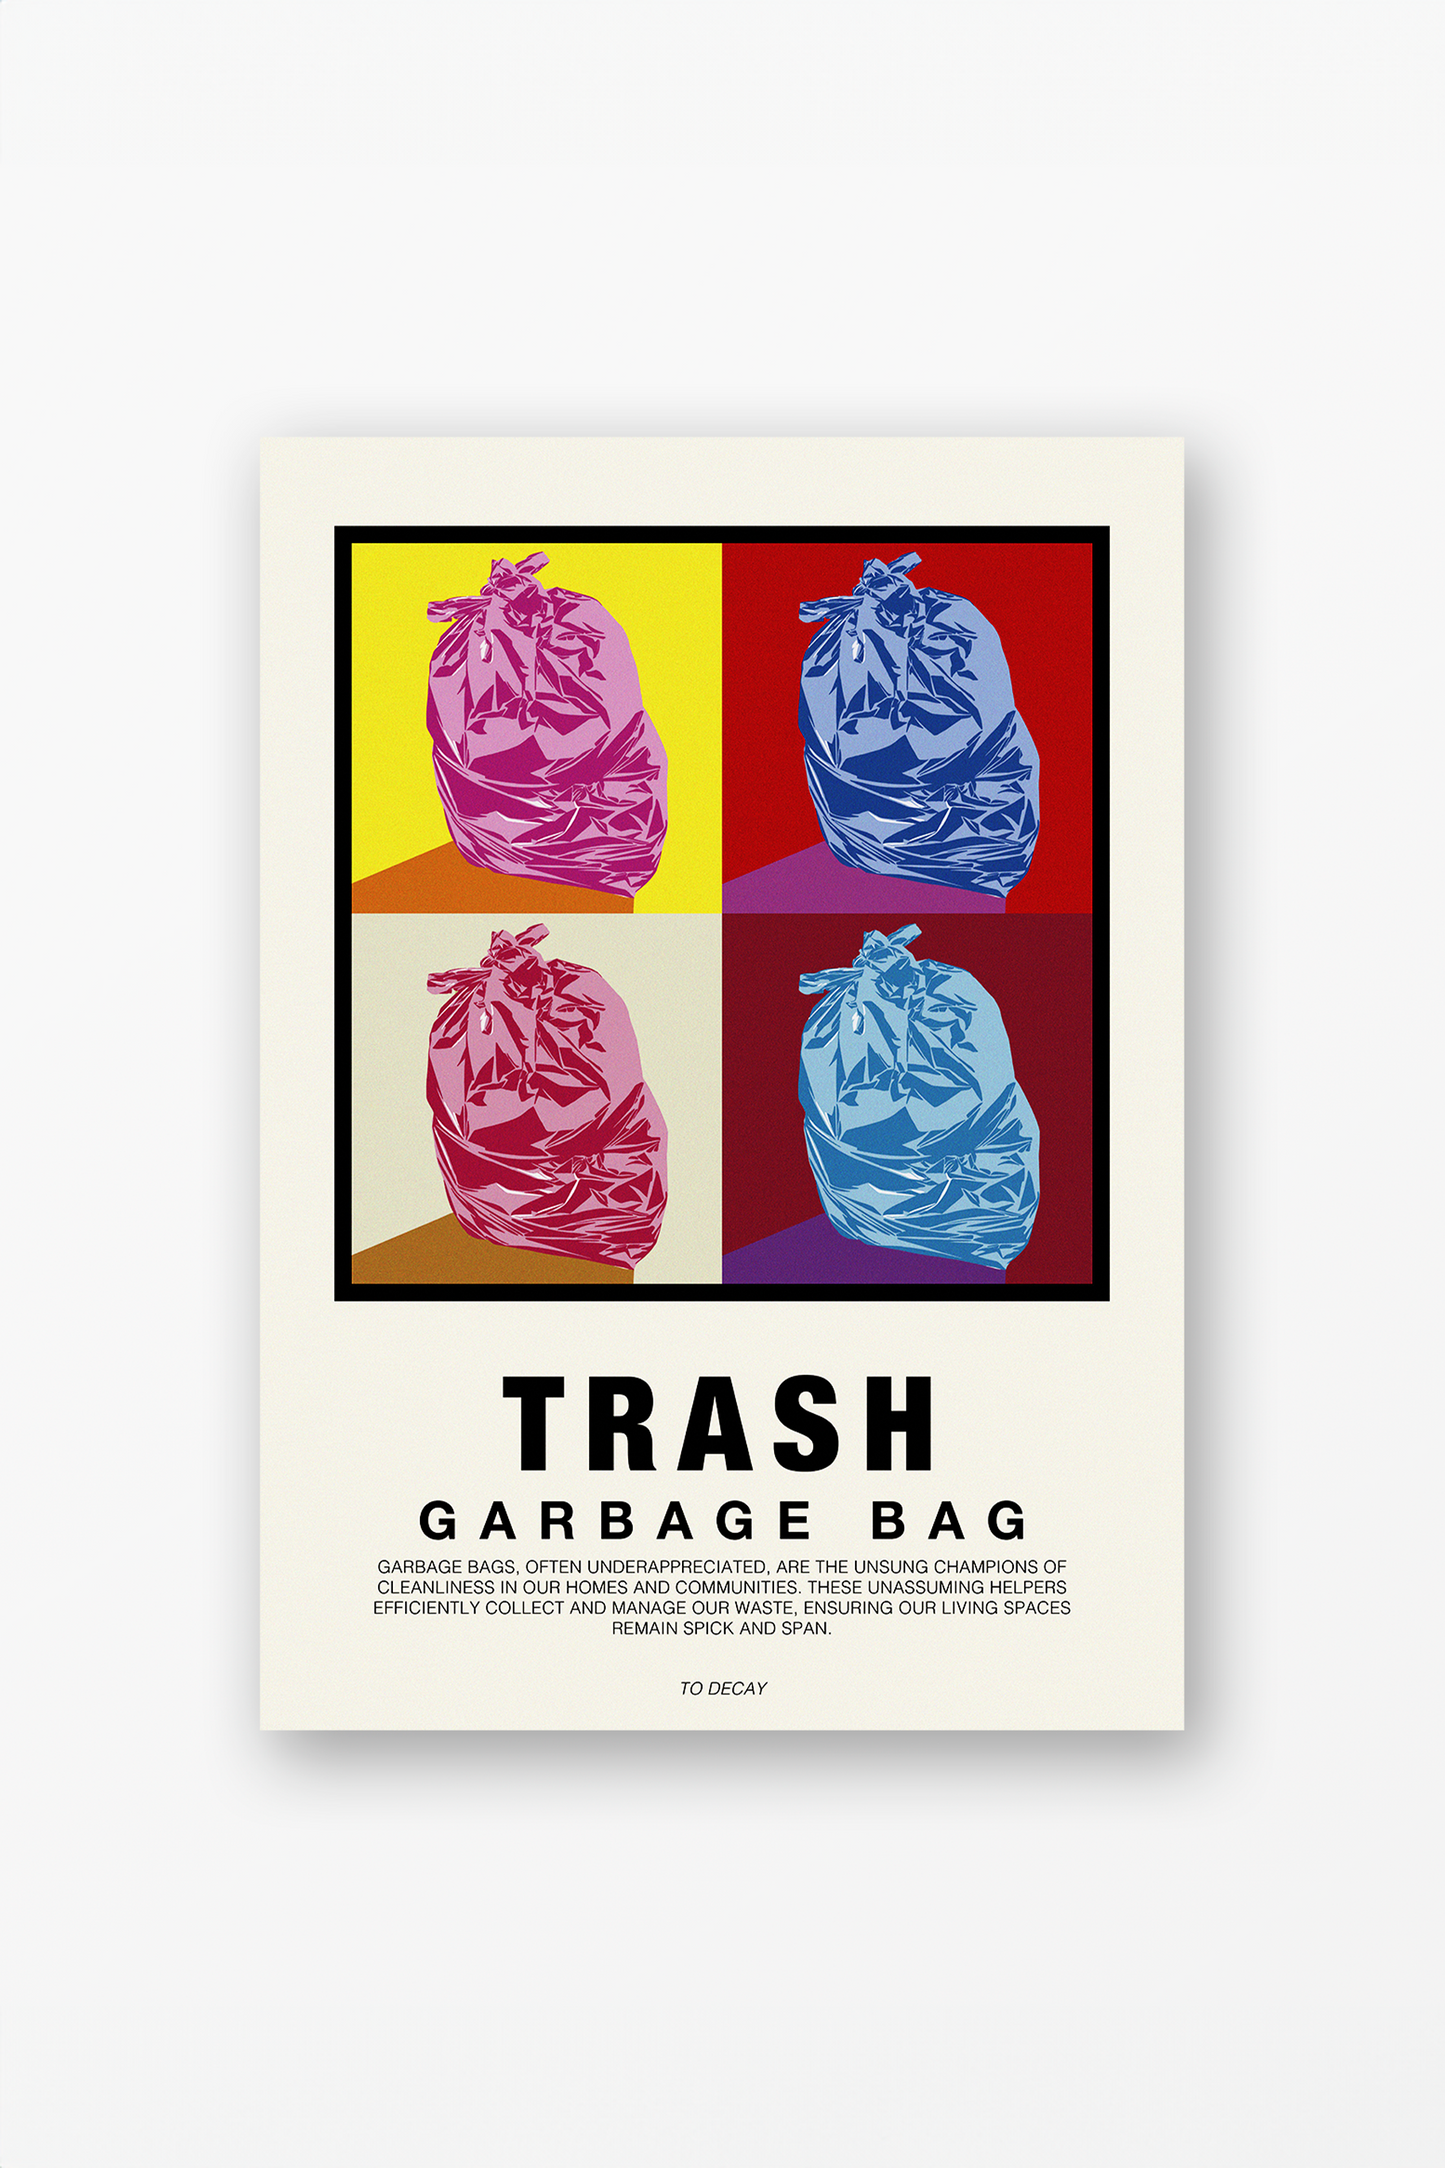 Trash - Garbage Bag Poster